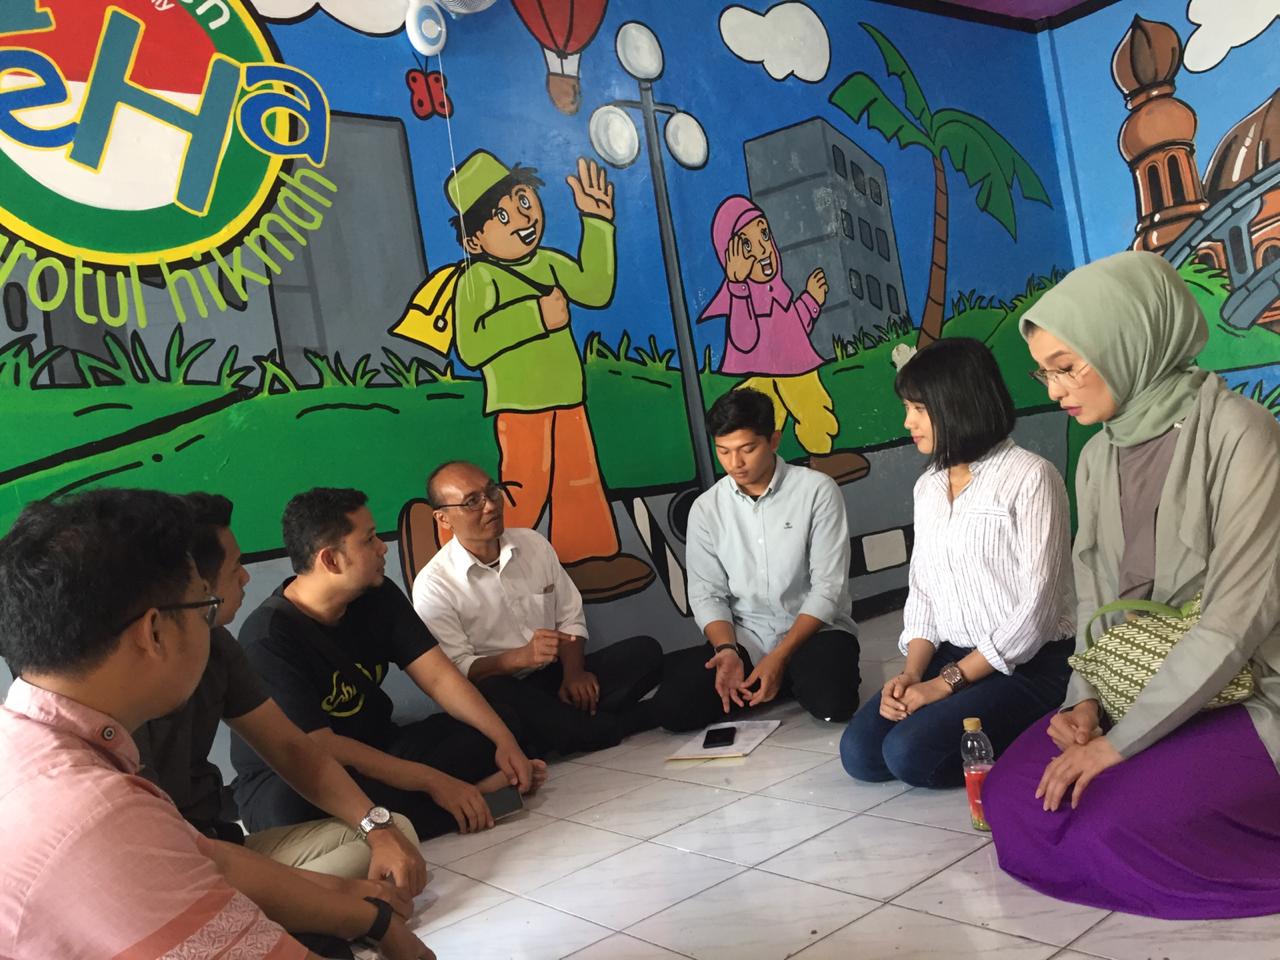 Tempat Wisata di Surabaya, Mengunjungi Dolly Dengan Perspektif Baru